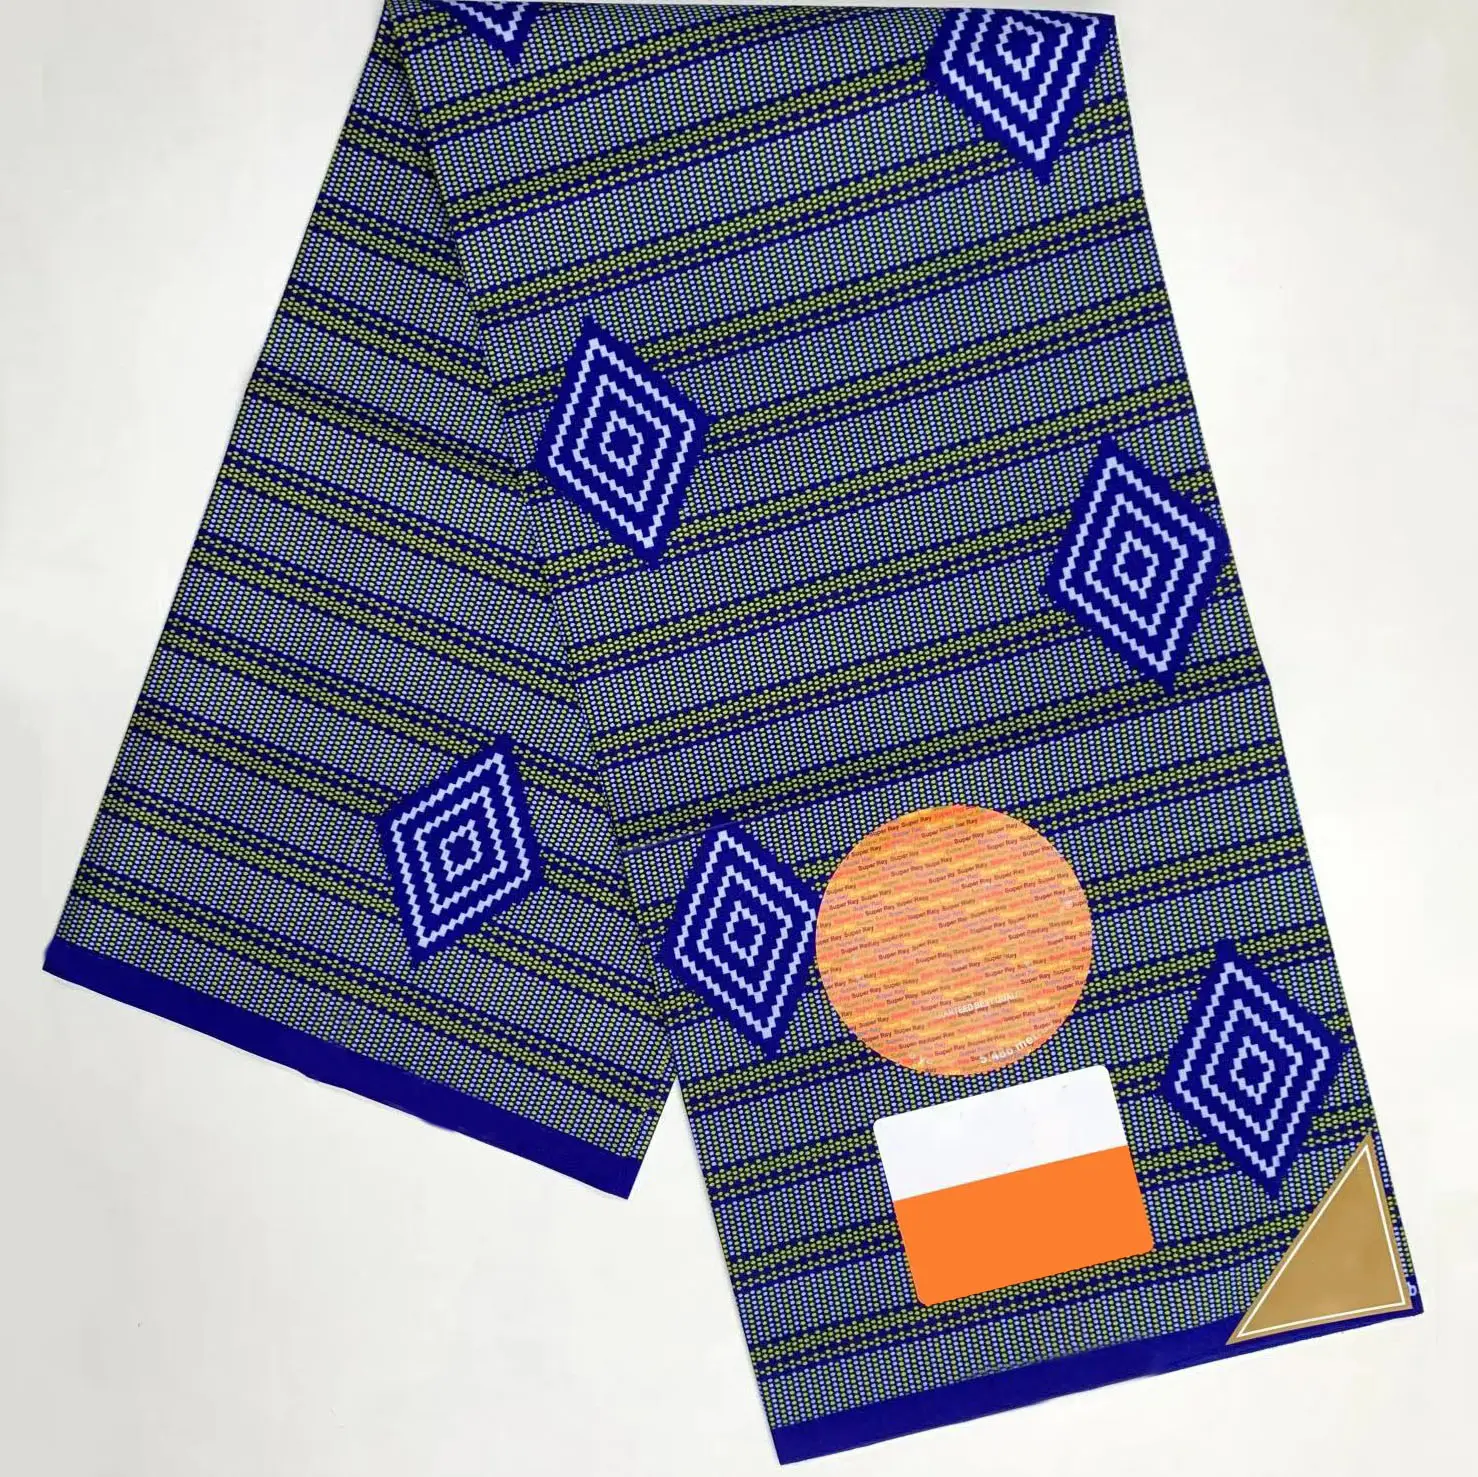 Bán buôn chất lượng tốt 100% polyester phi sáp khối in ankara vải Batik vải